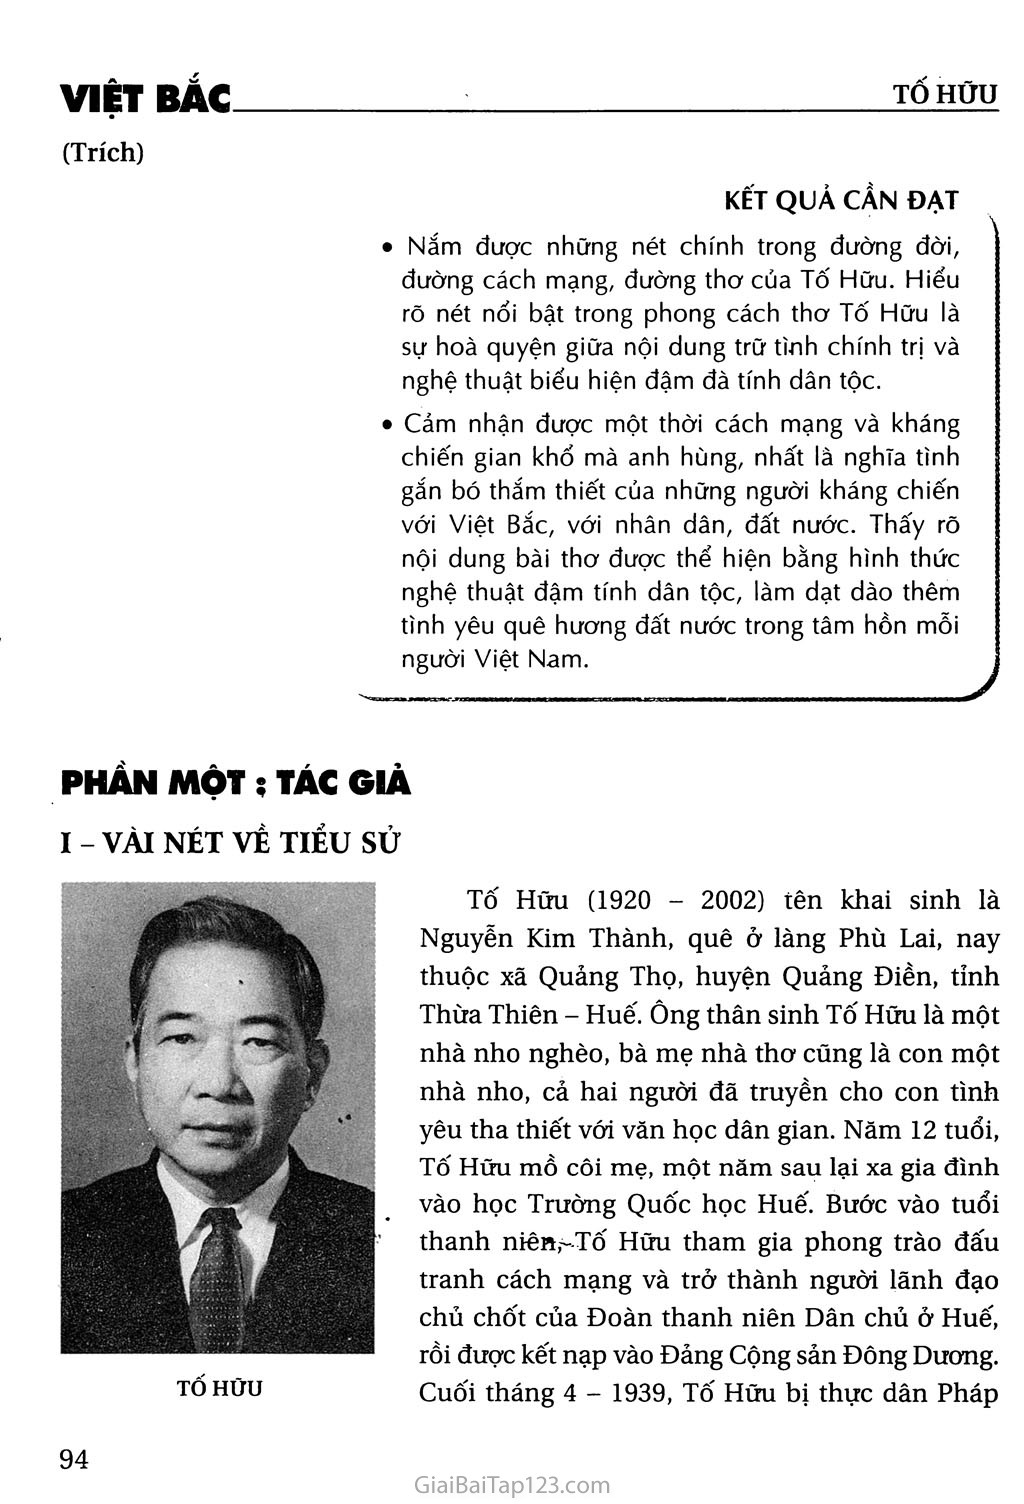 Việt Bắc (trích) trang 1